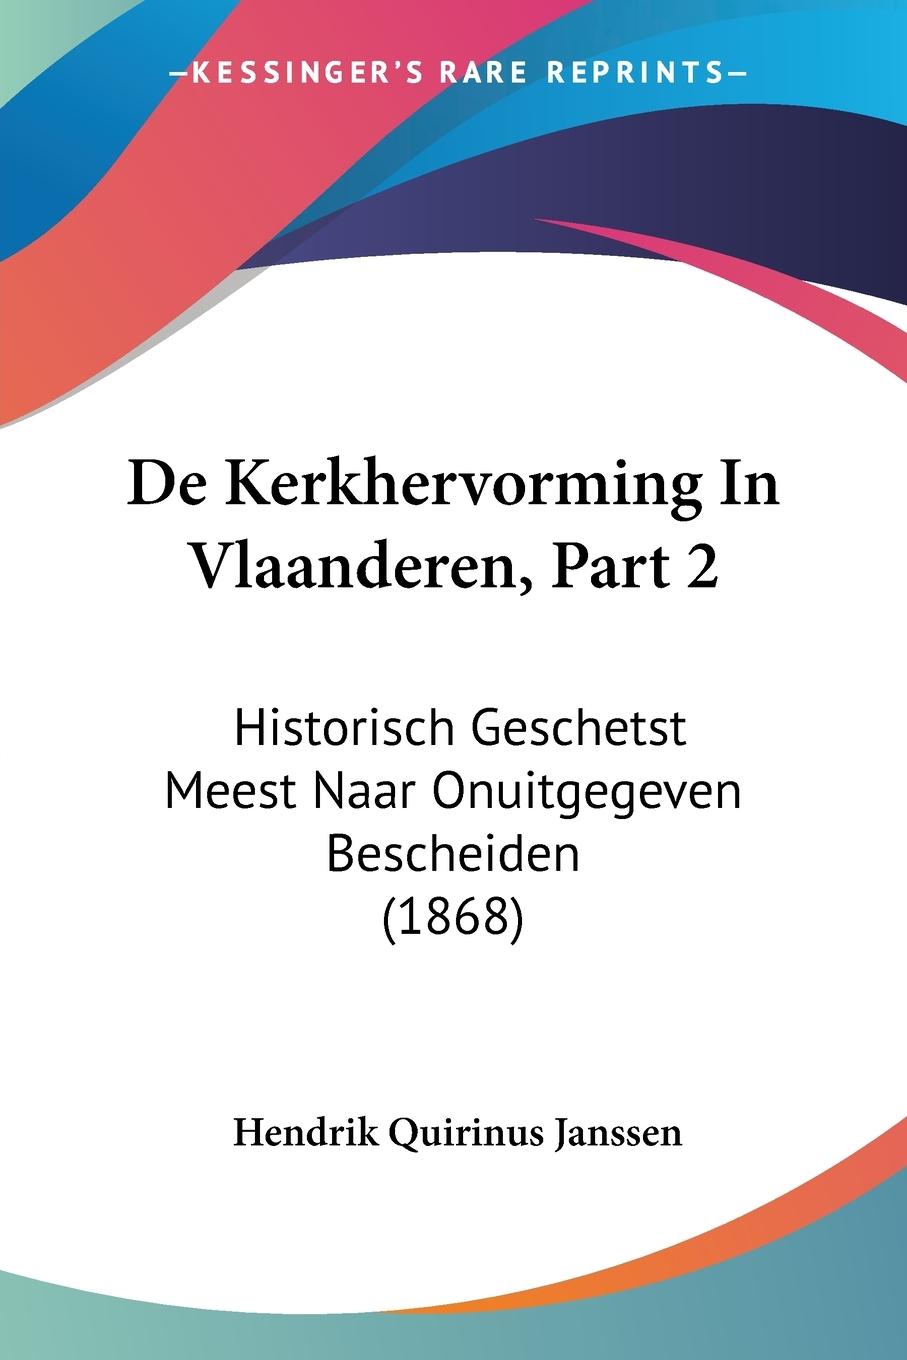 De Kerkhervorming In Vlaanderen, Part 2 - Janssen, Hendrik Quirinus